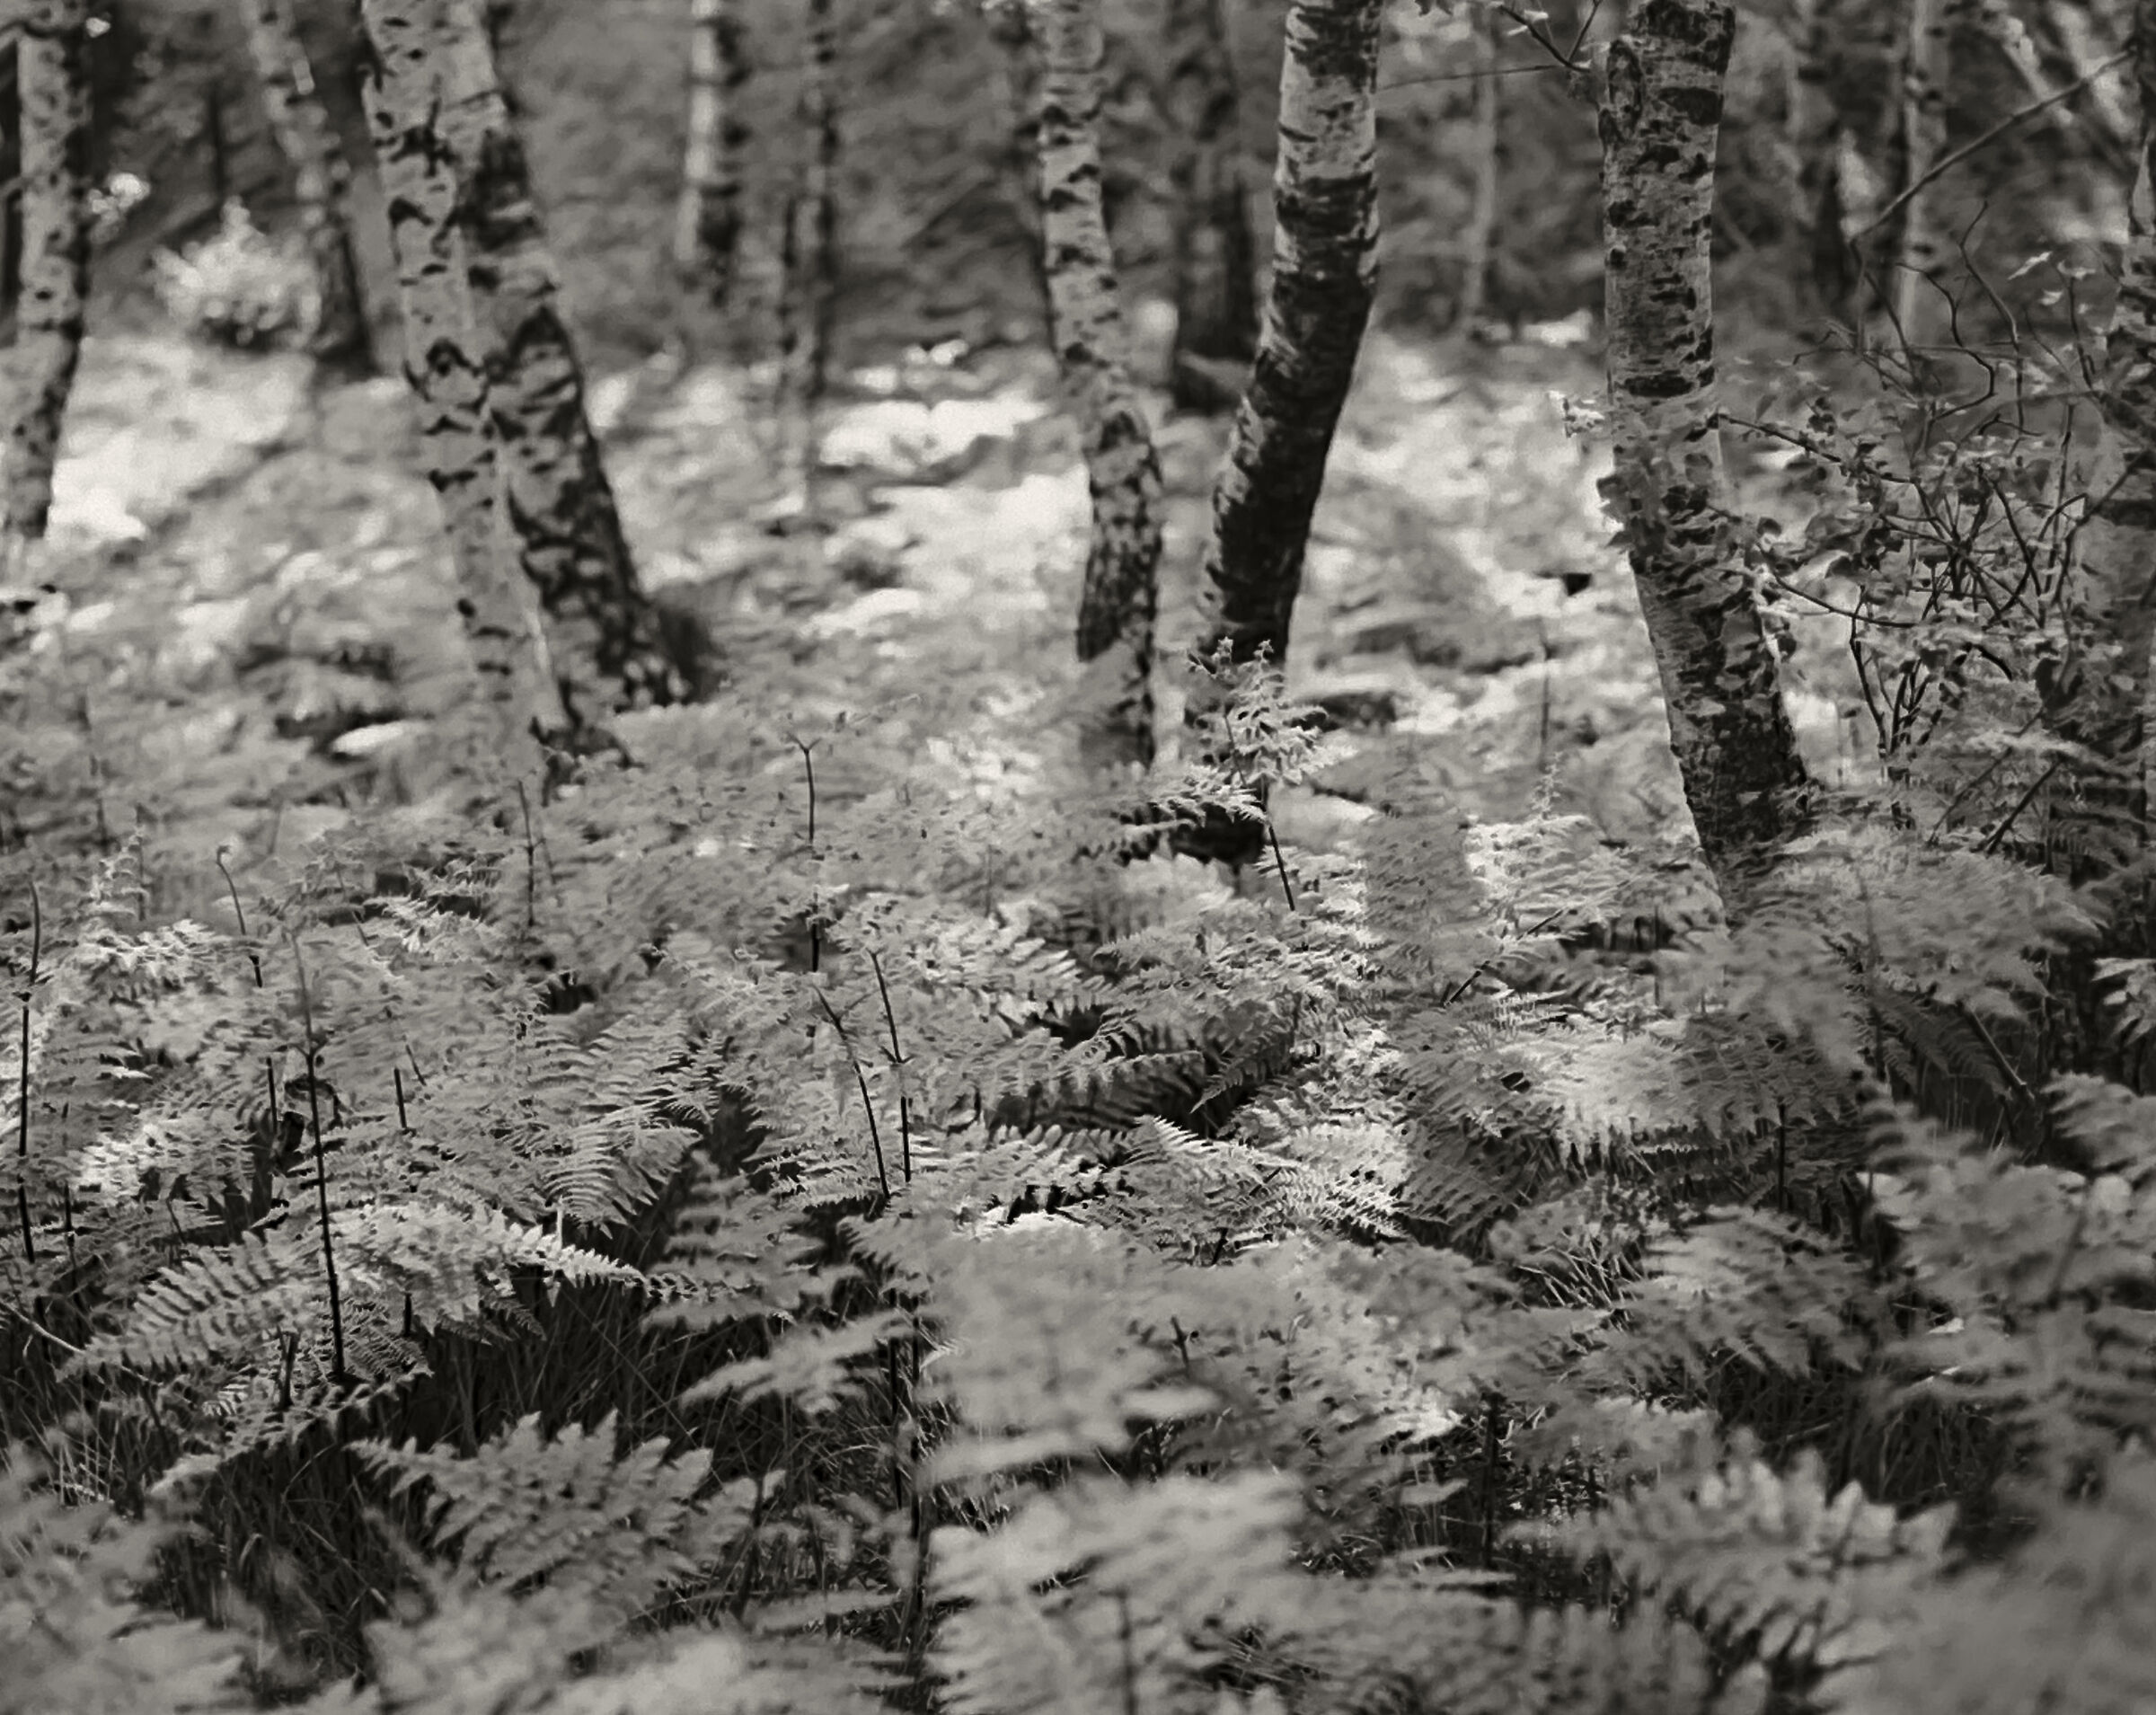 Ferns and birches...